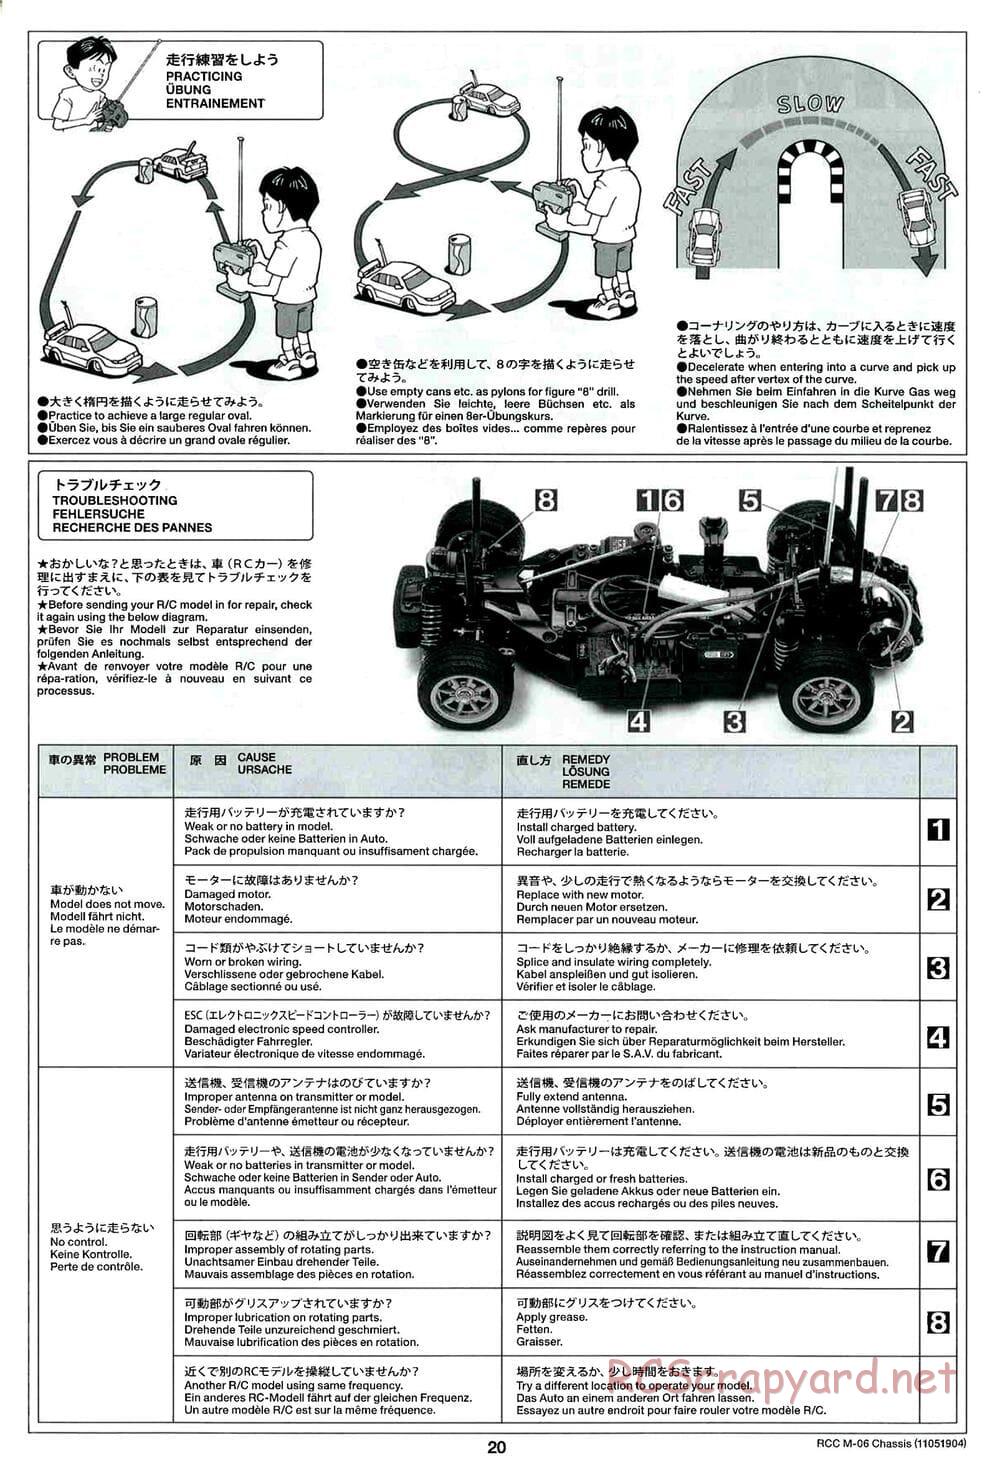 Tamiya - M-06 Chassis - Manual - Page 20